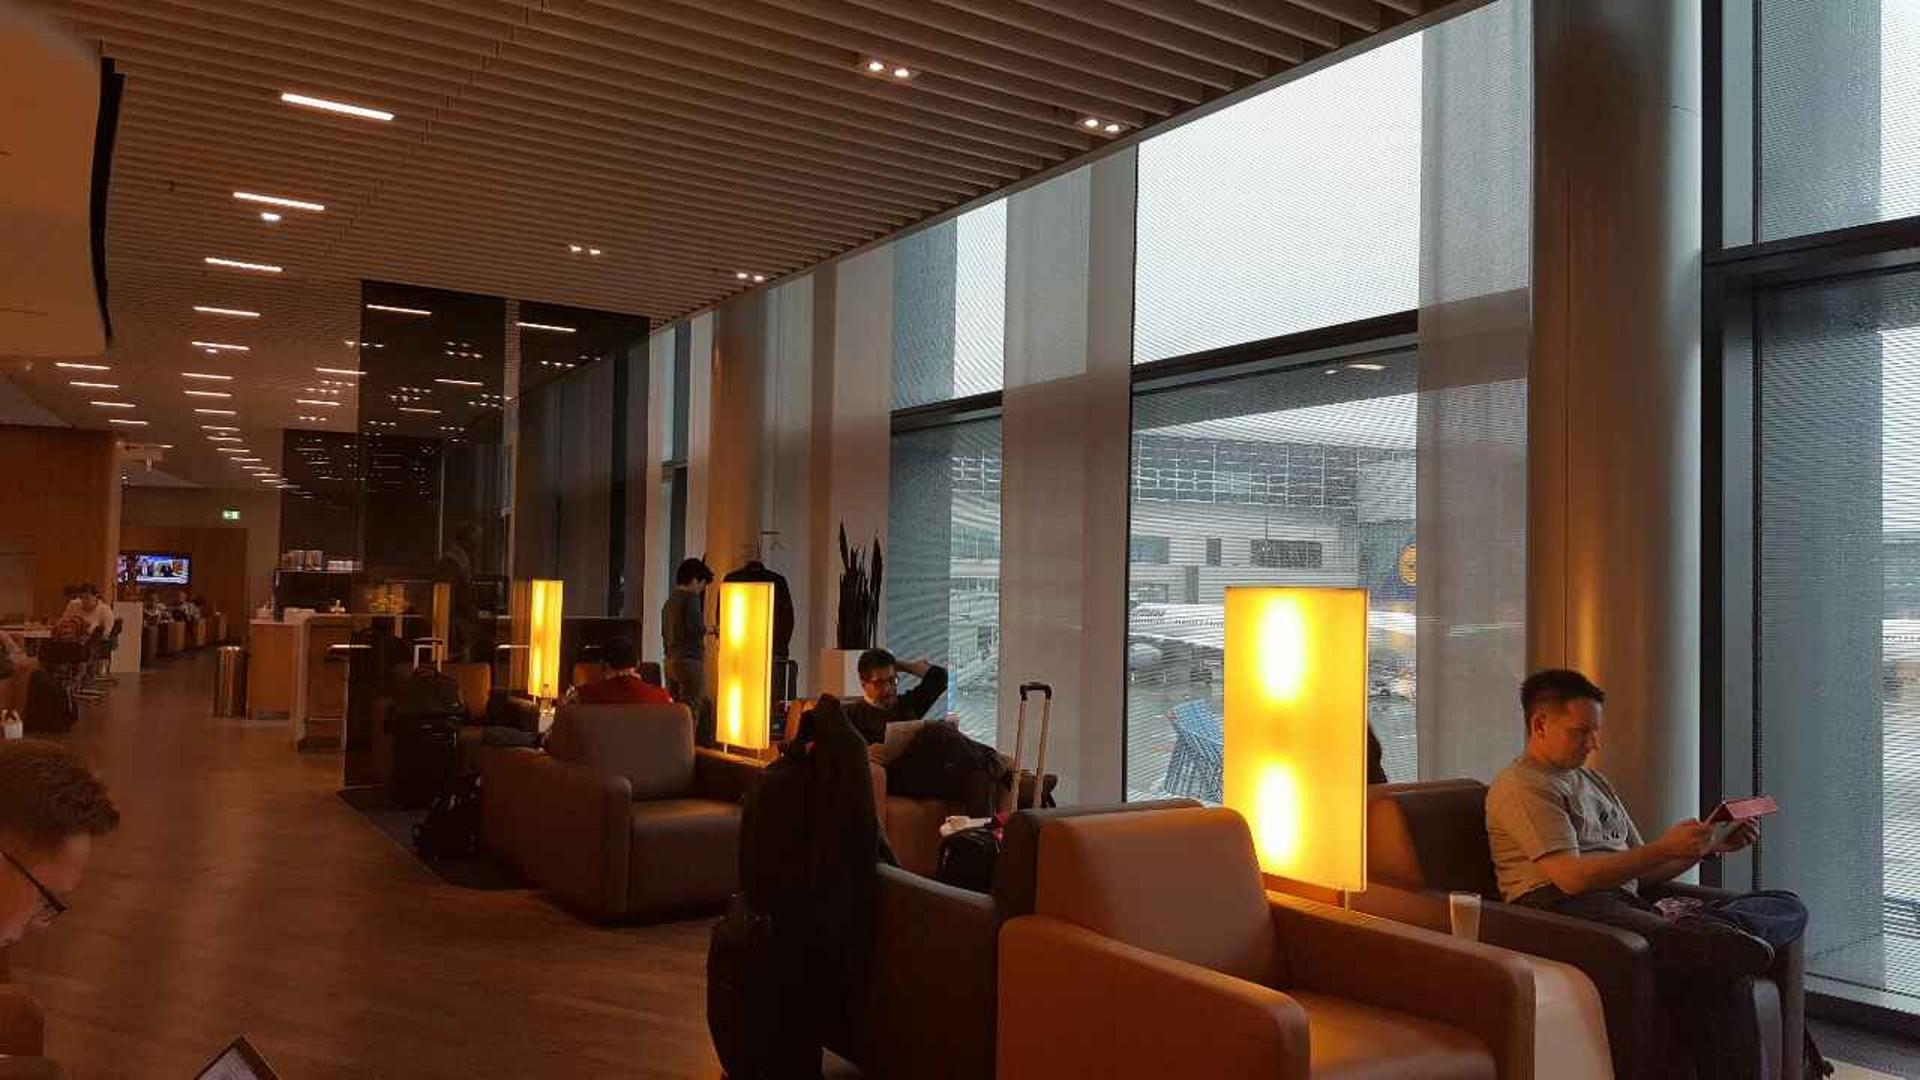 Lufthansa Senator Lounge (Schengen) image 3 of 6